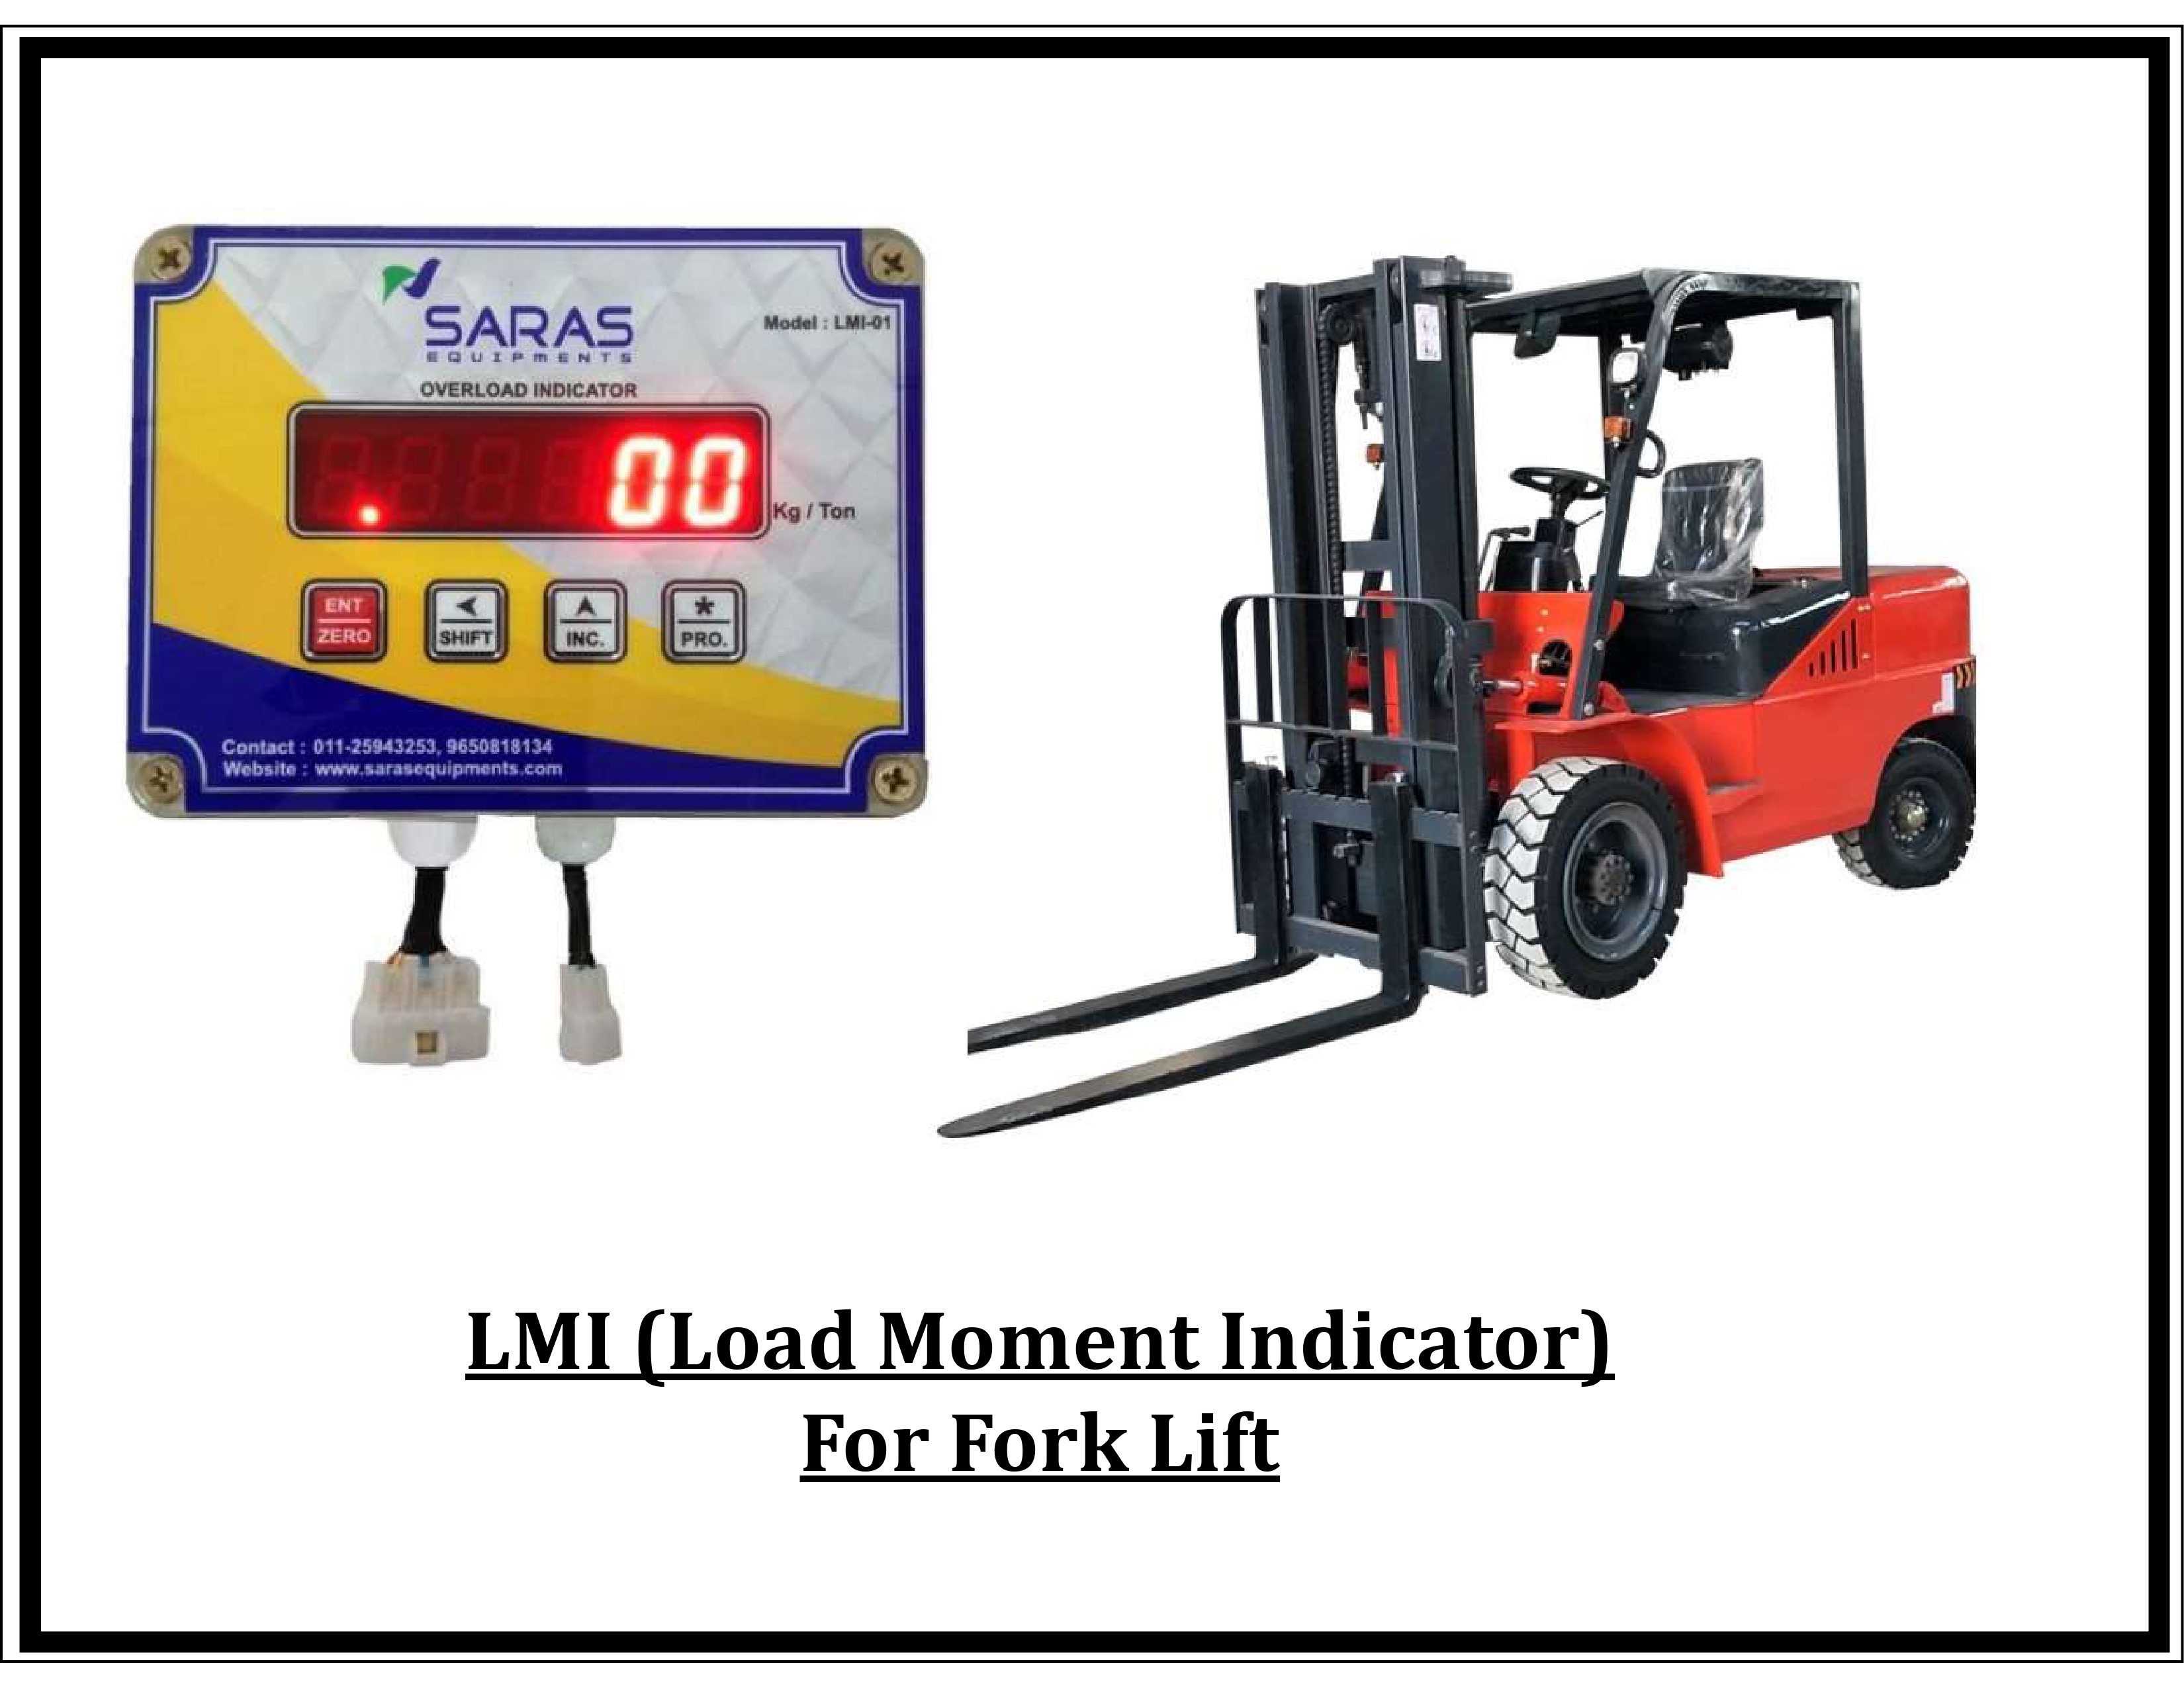 Safe Load Indicator for Fork Lift